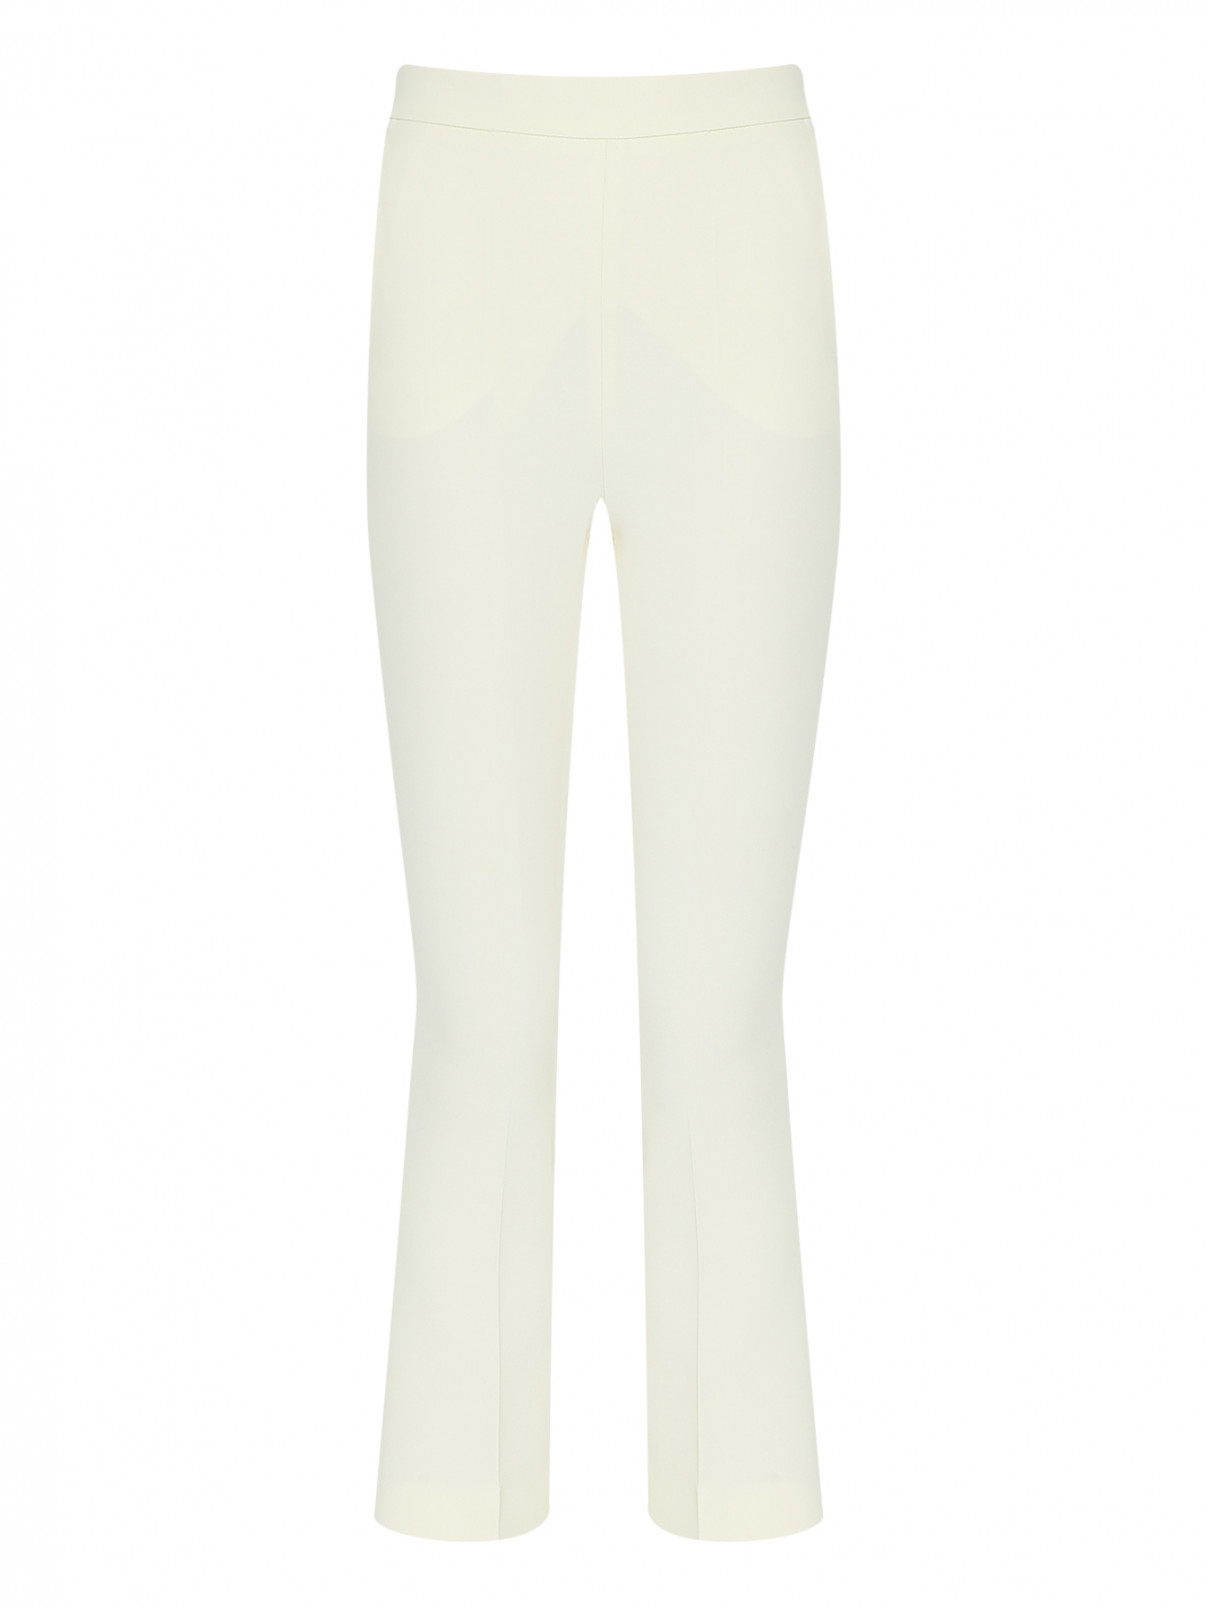 Укороченные брюки из шерсти Max Mara  –  Общий вид  – Цвет:  Белый